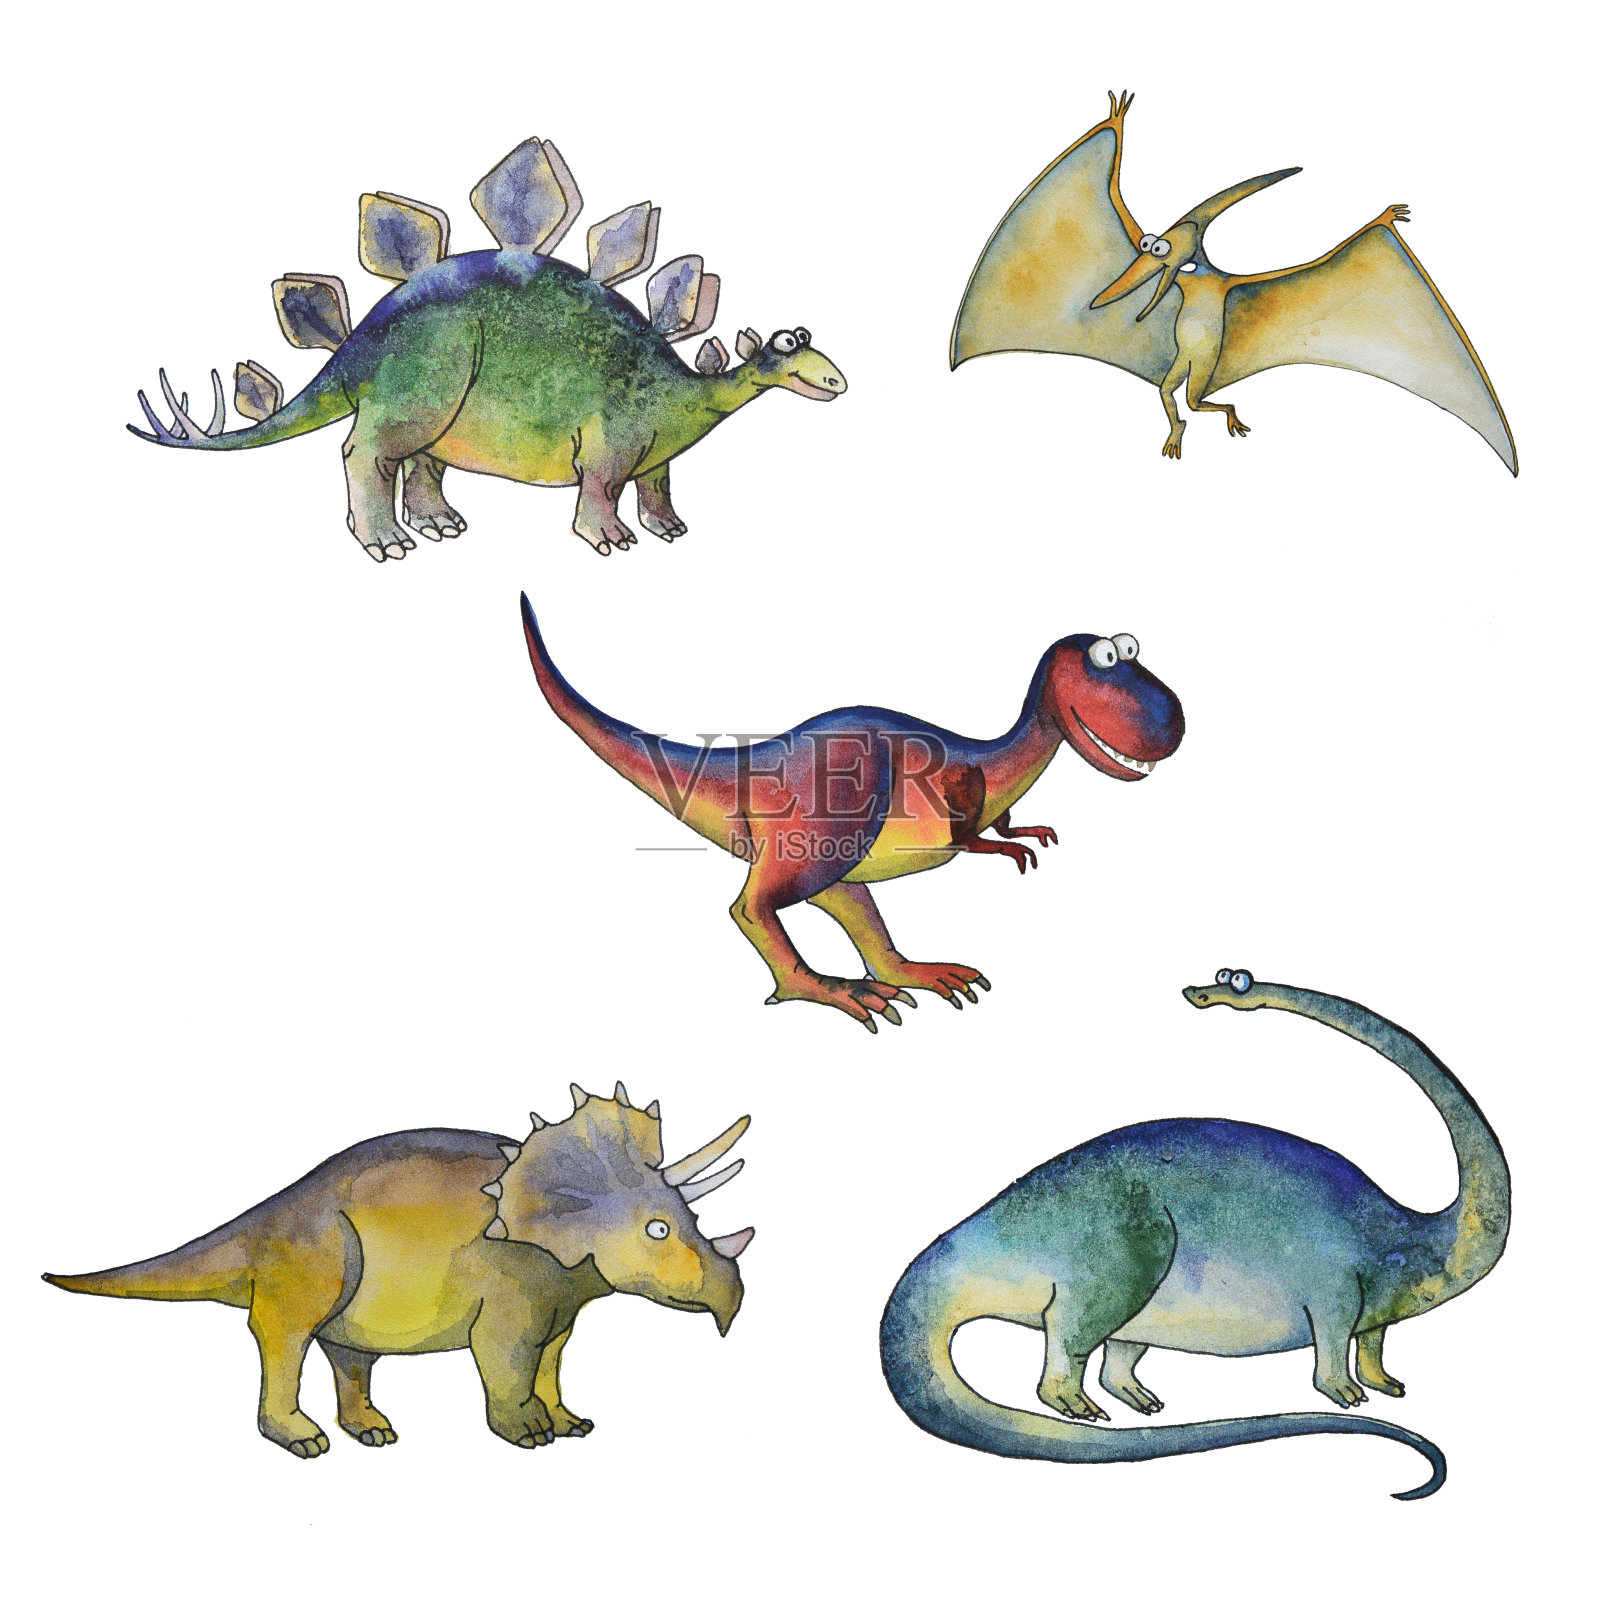 侏罗纪时期的恐龙集水彩画风格插画图片素材